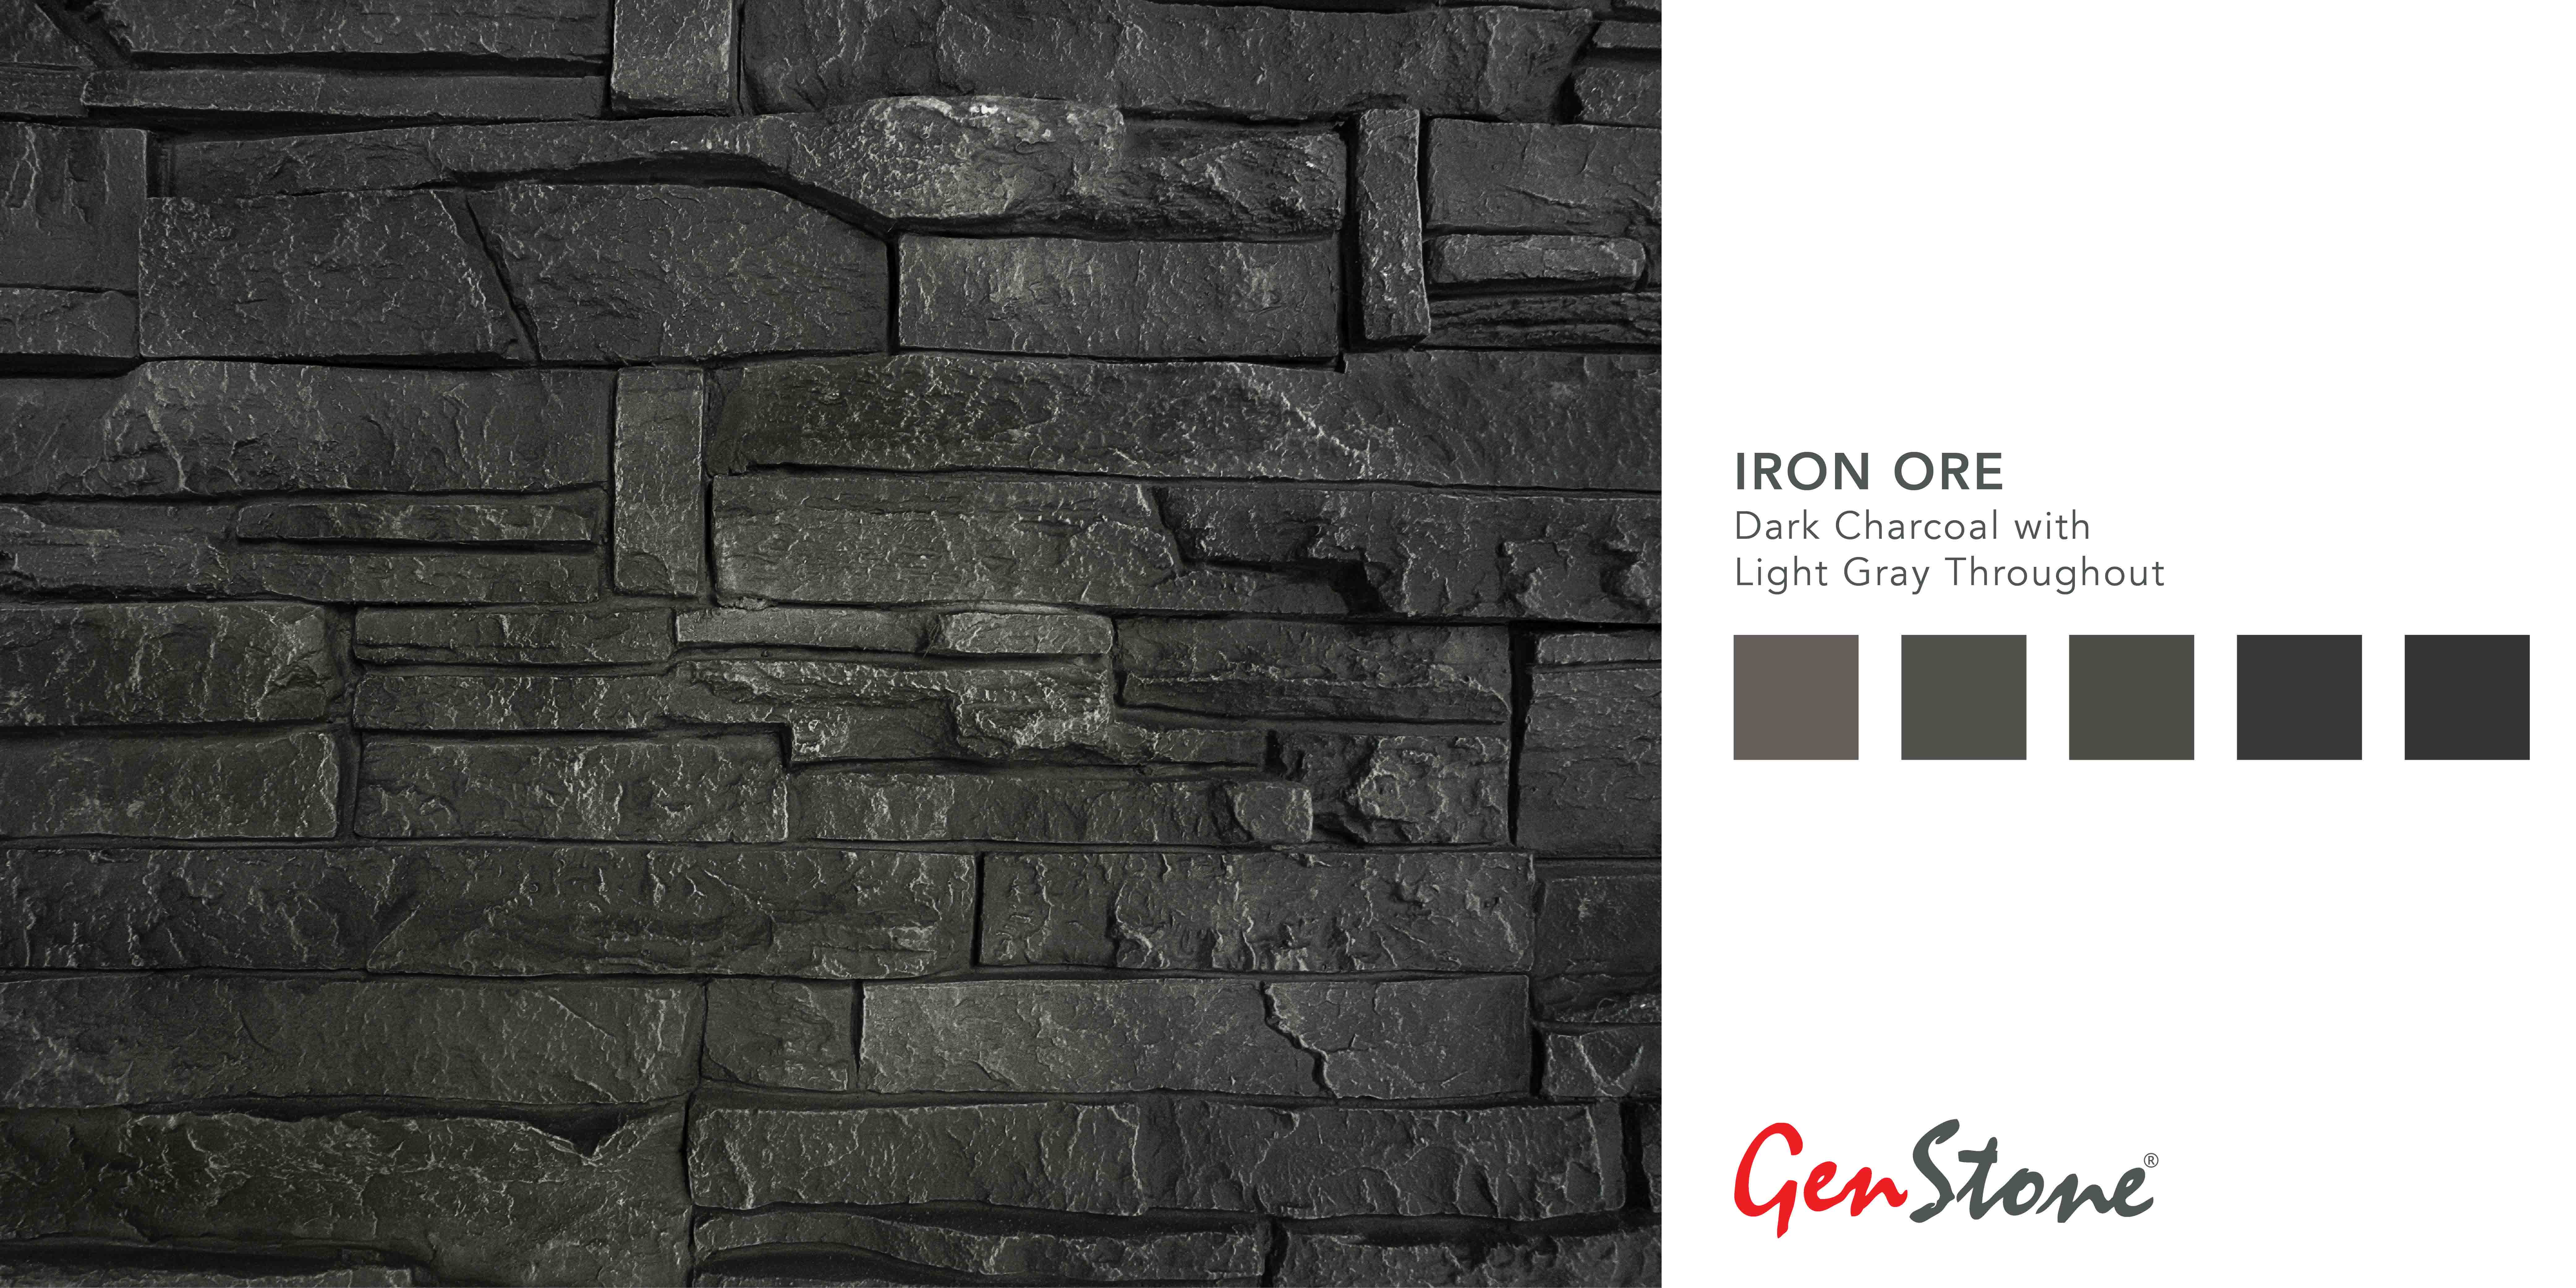 GenStone Iron Ore Color Profile